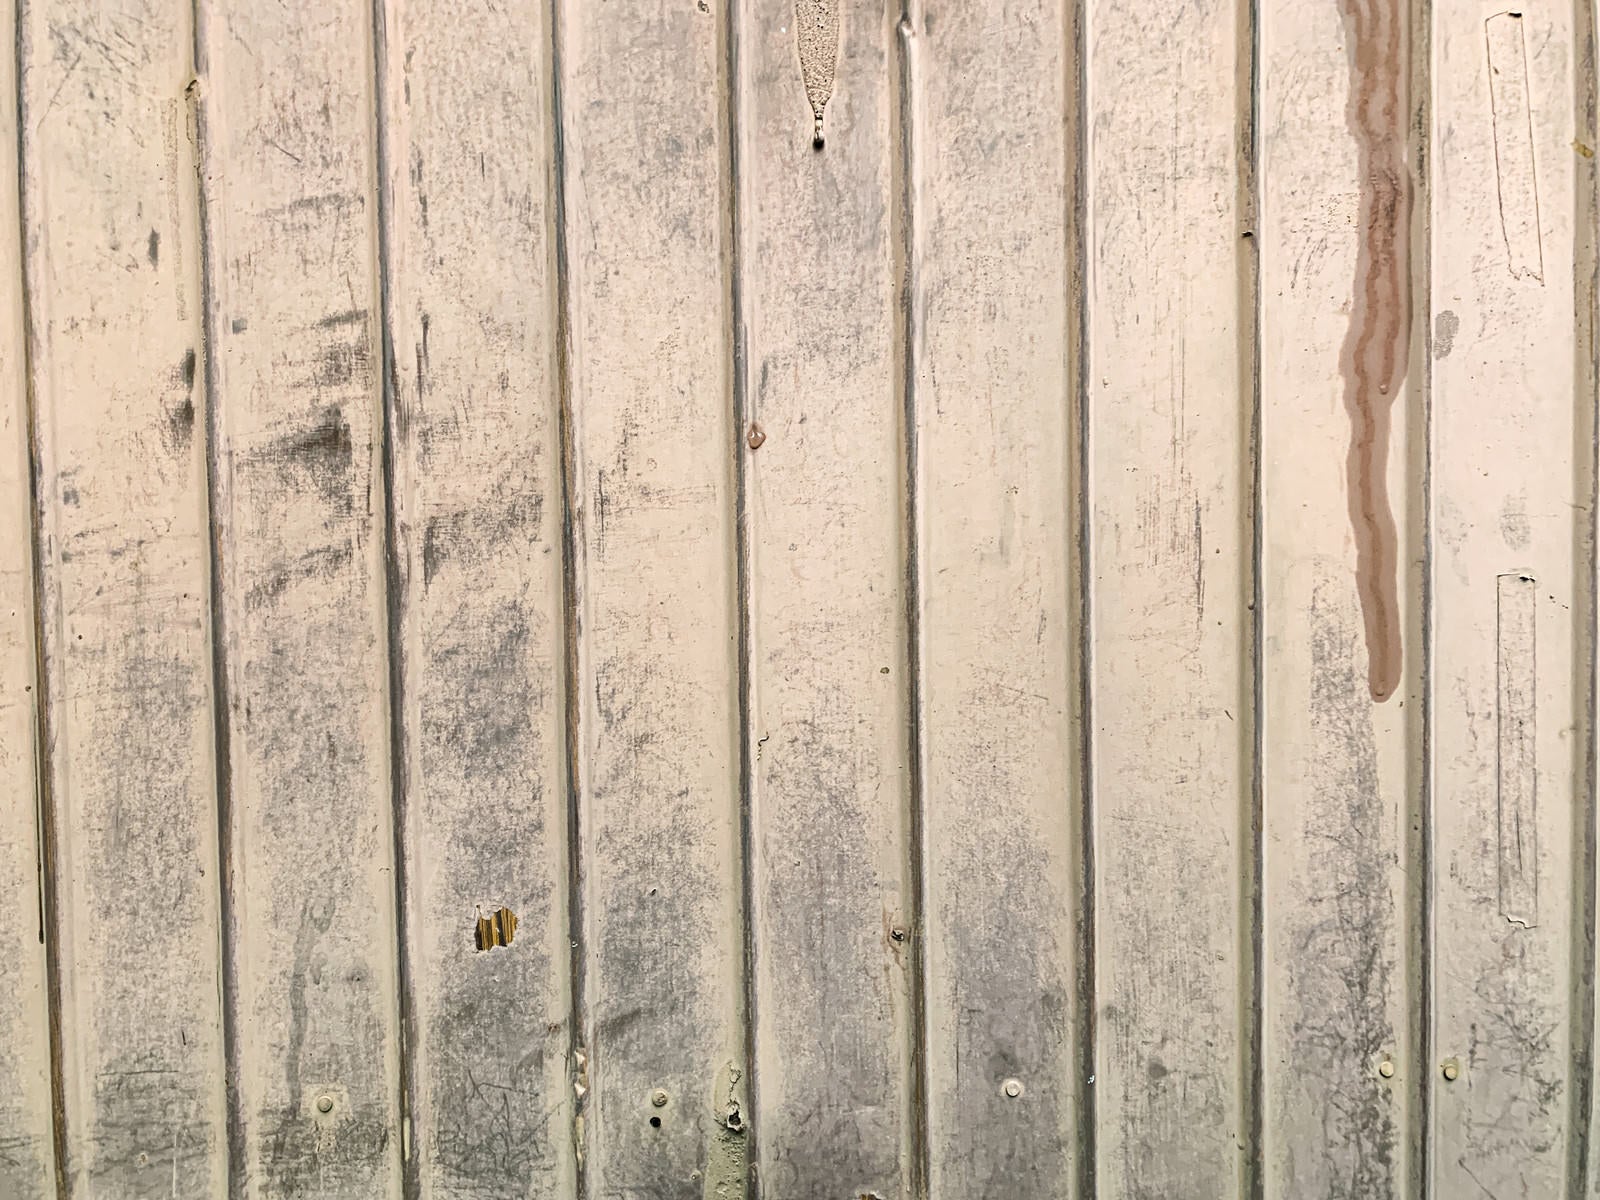 「風化によりペンキが褪せた壁」の写真